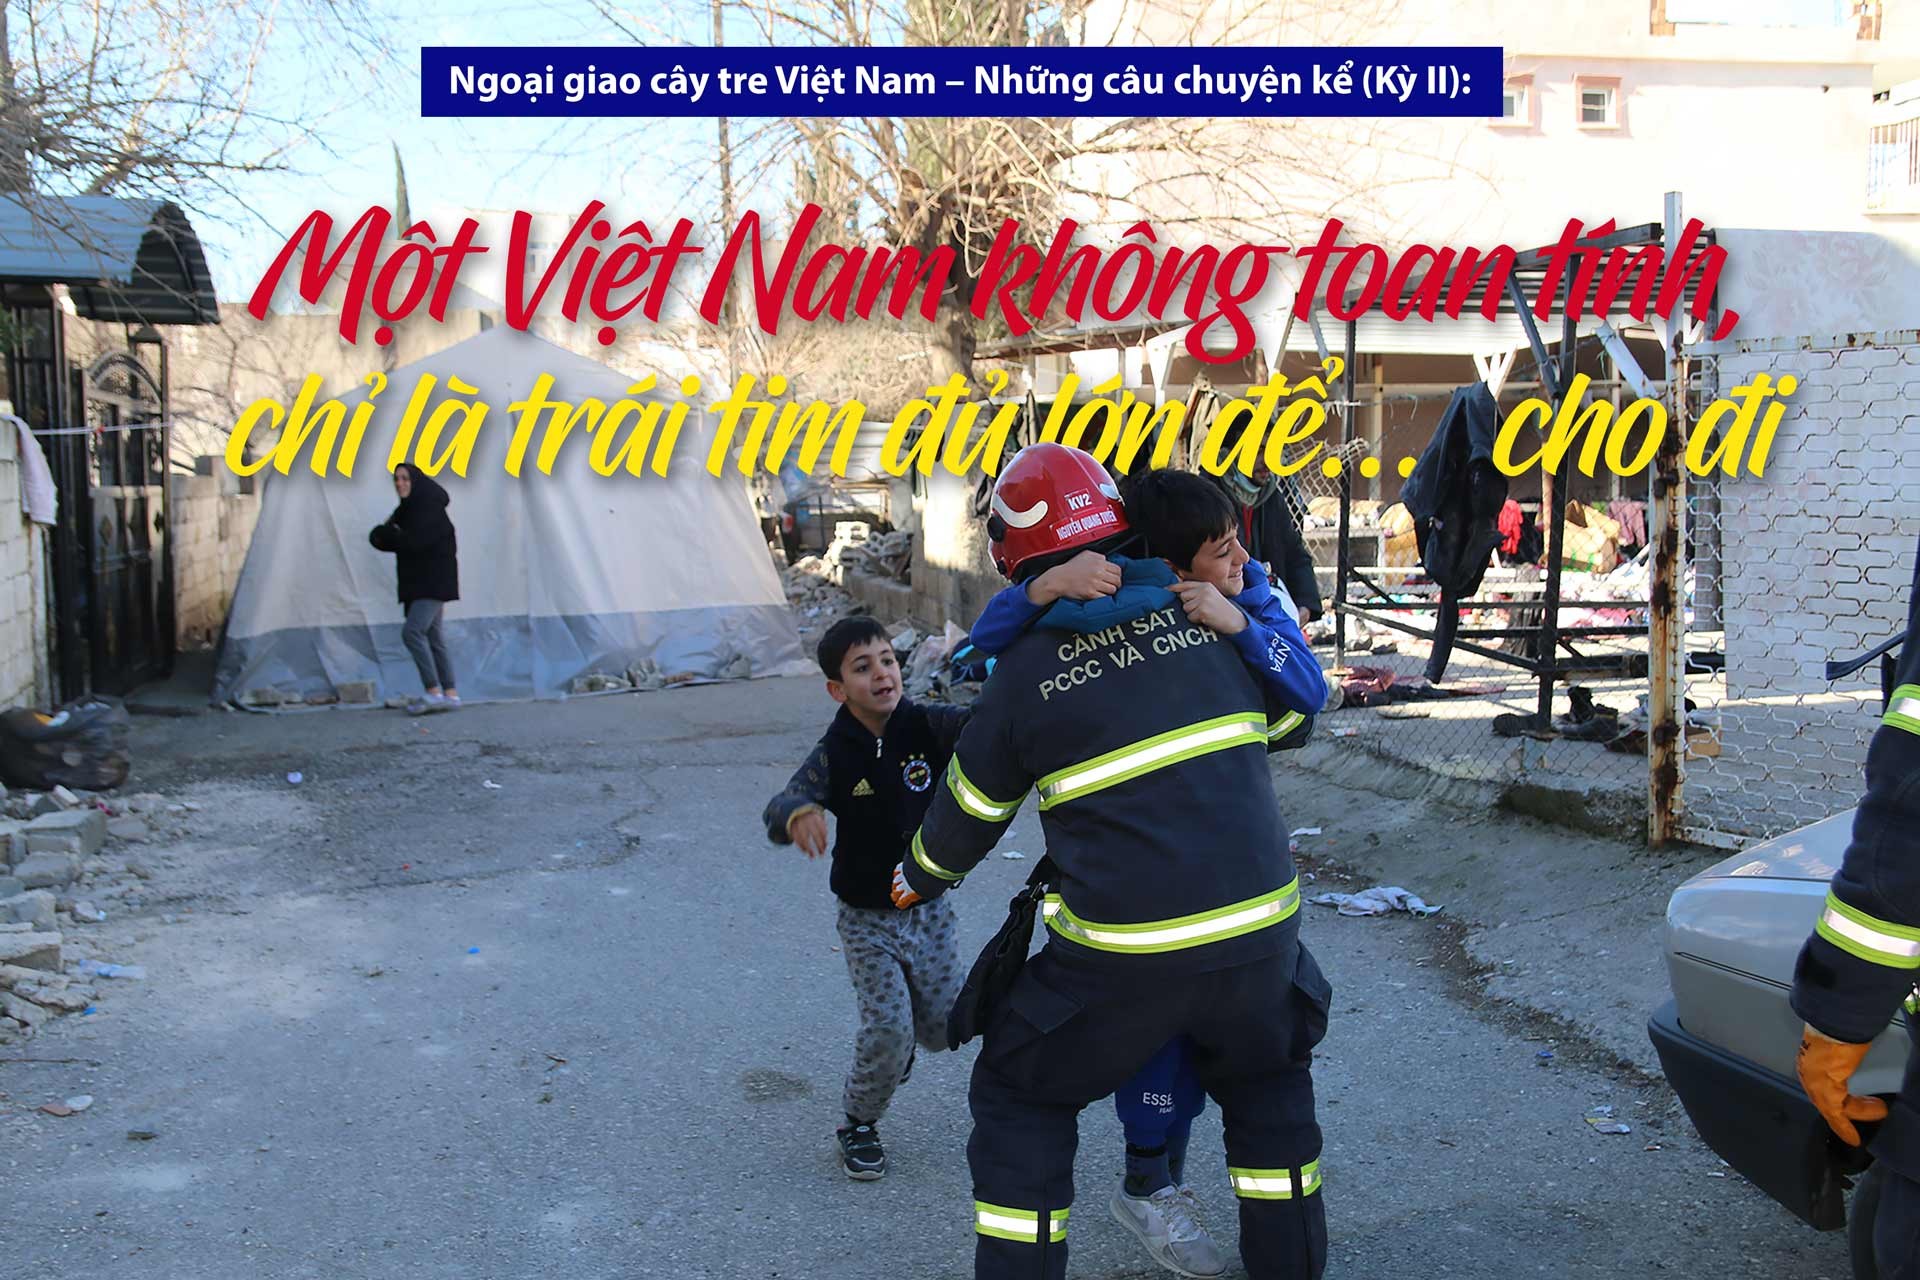 Một Việt Nam không toan tính, chỉ là trái tim đủ lớn để… cho đi